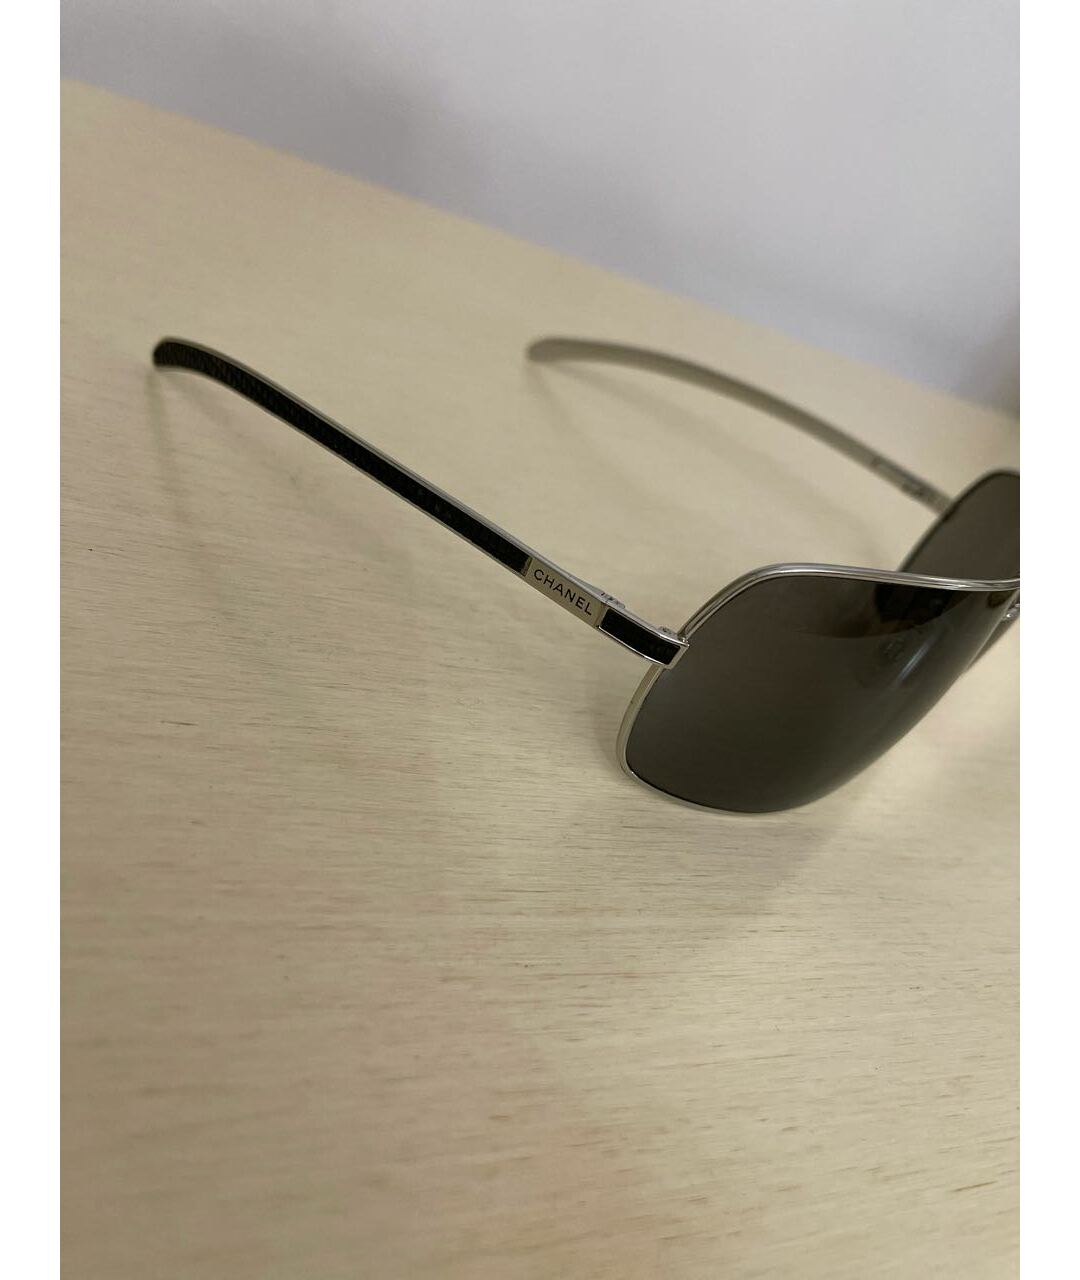 CHANEL PRE-OWNED Черные металлические солнцезащитные очки, фото 2